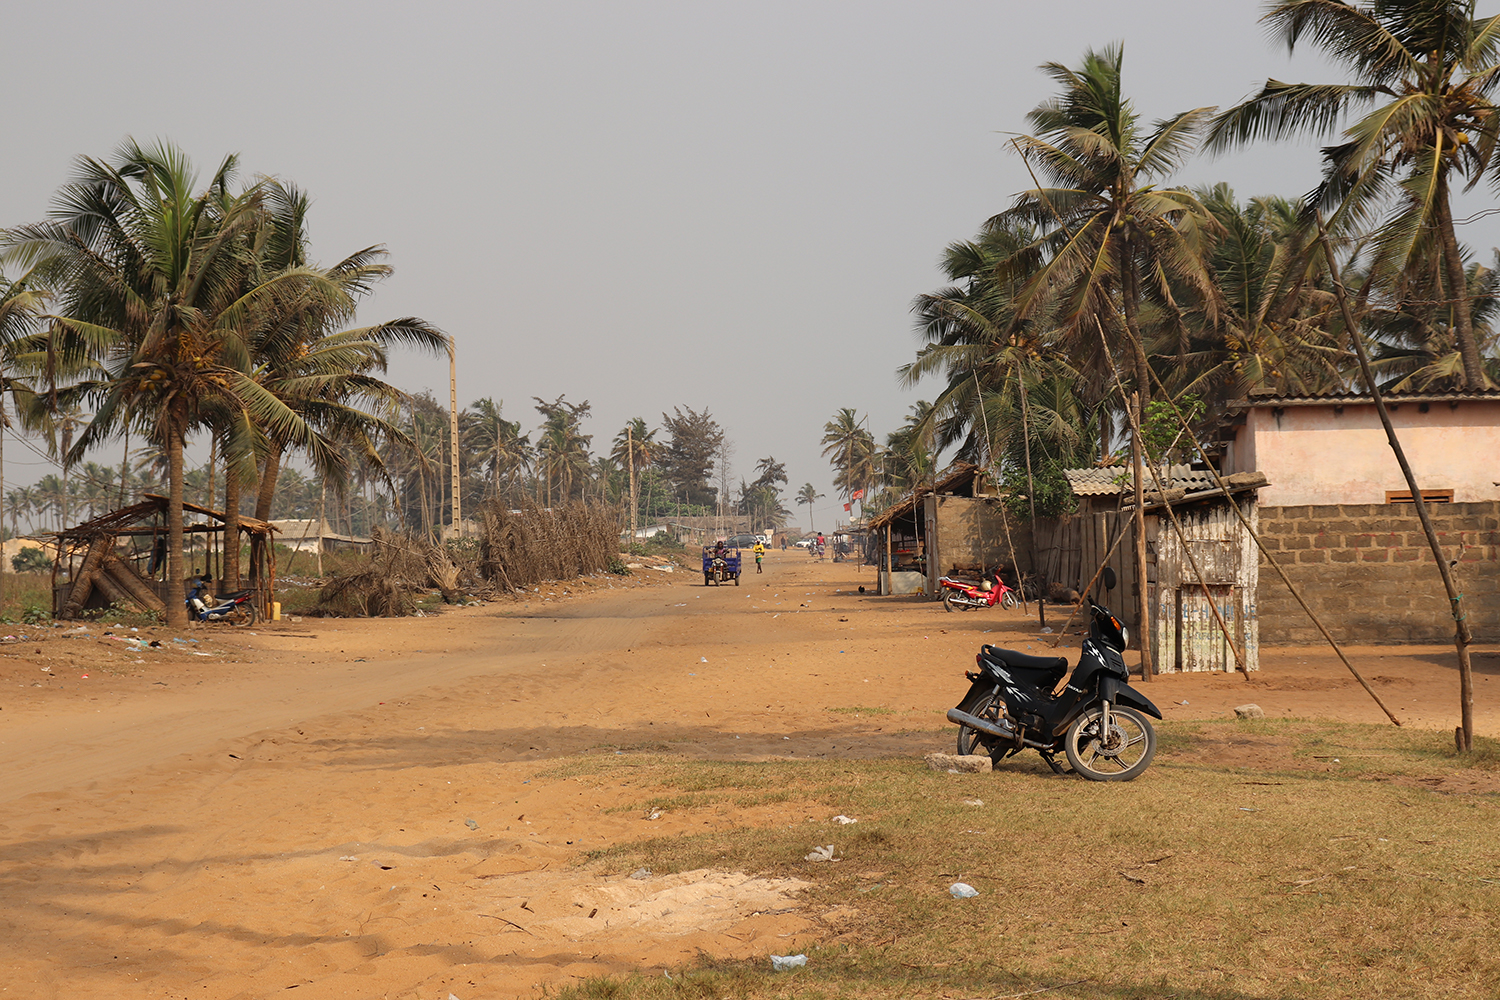 C’est ici que débute la route qui longe l’océan Atlantique et qui mène à la ville d’Ouidah en direction du pays voisin, le Togo. Sur la droite, ce sont des maisons de pêcheurs.